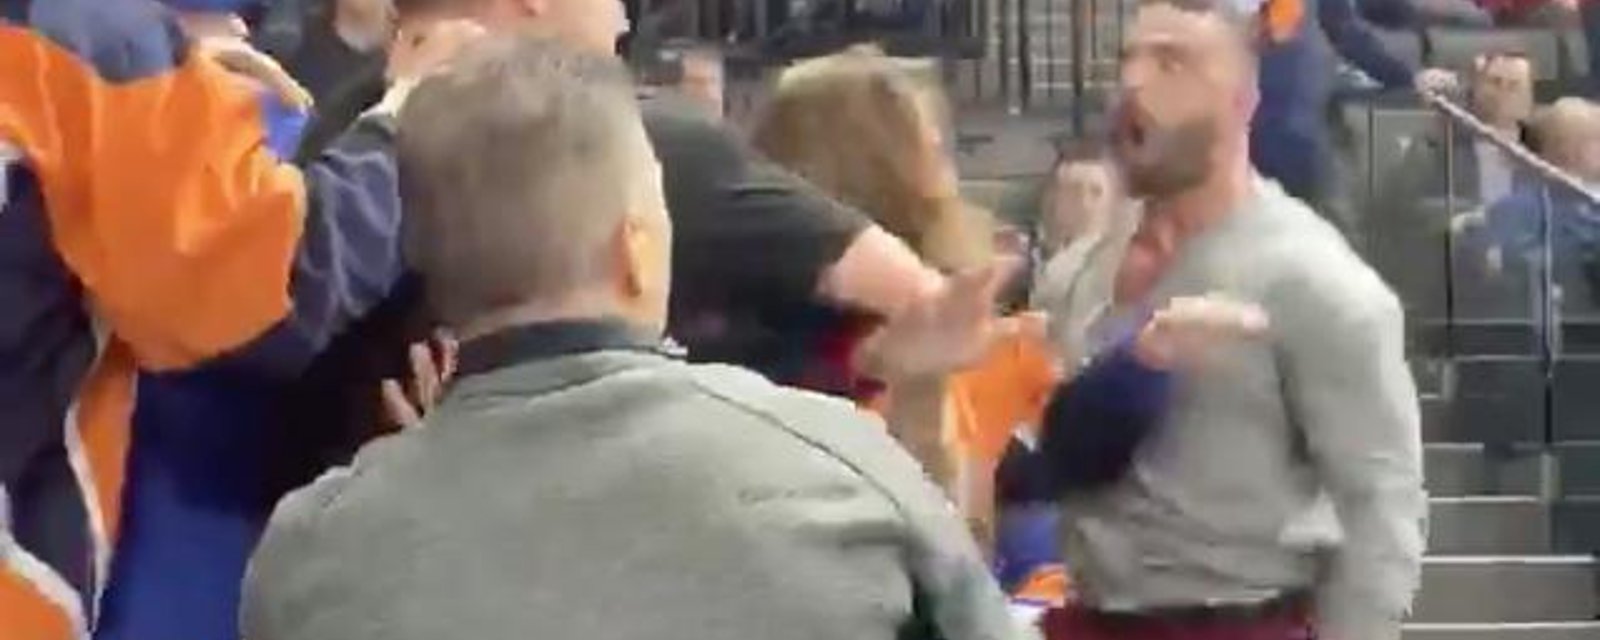 À VOIR | La bagarre éclate entre des partisans au match des Islanders